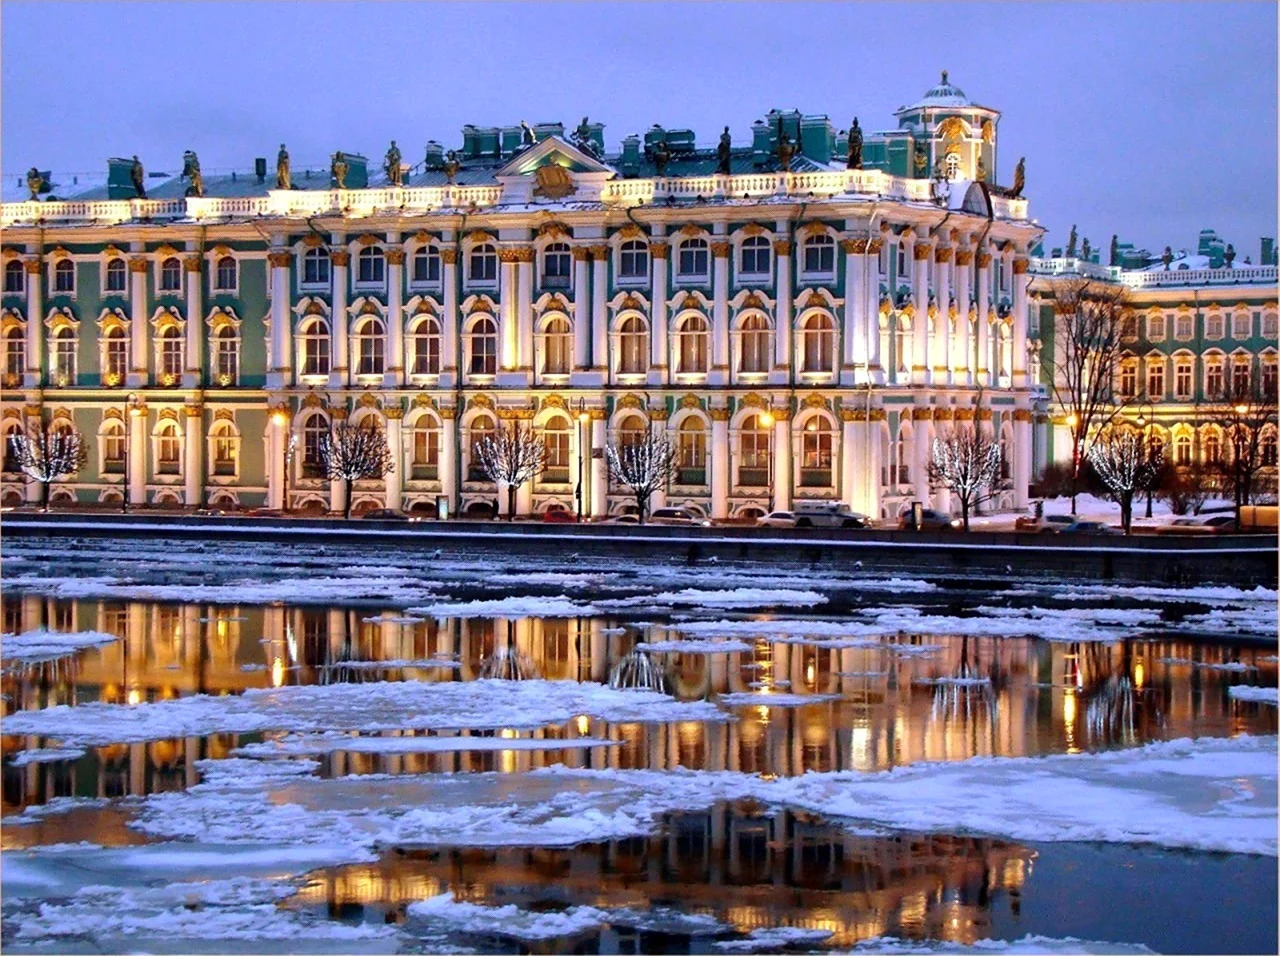 Санкт-Петербург Эрмитаж зимний дворец. Красивая картинка